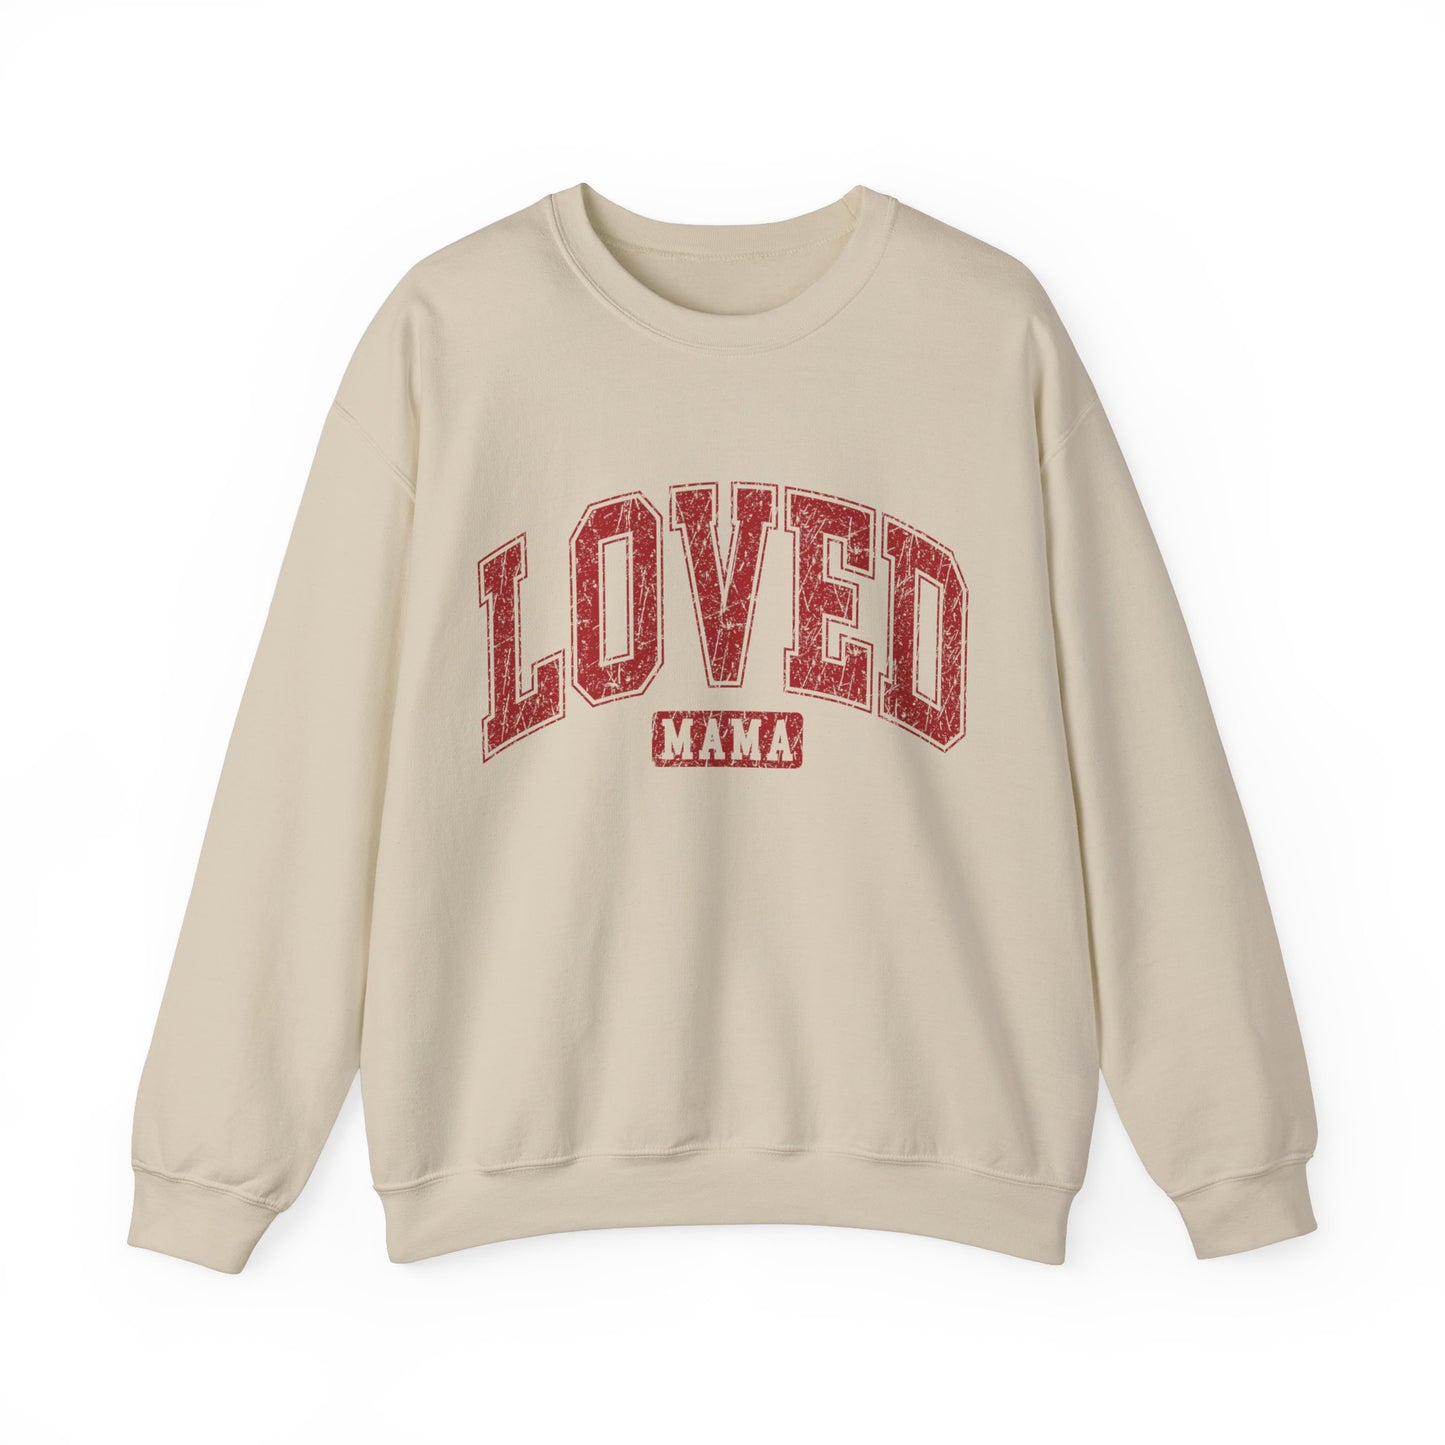 Loved Mama Women's Sweatshirt